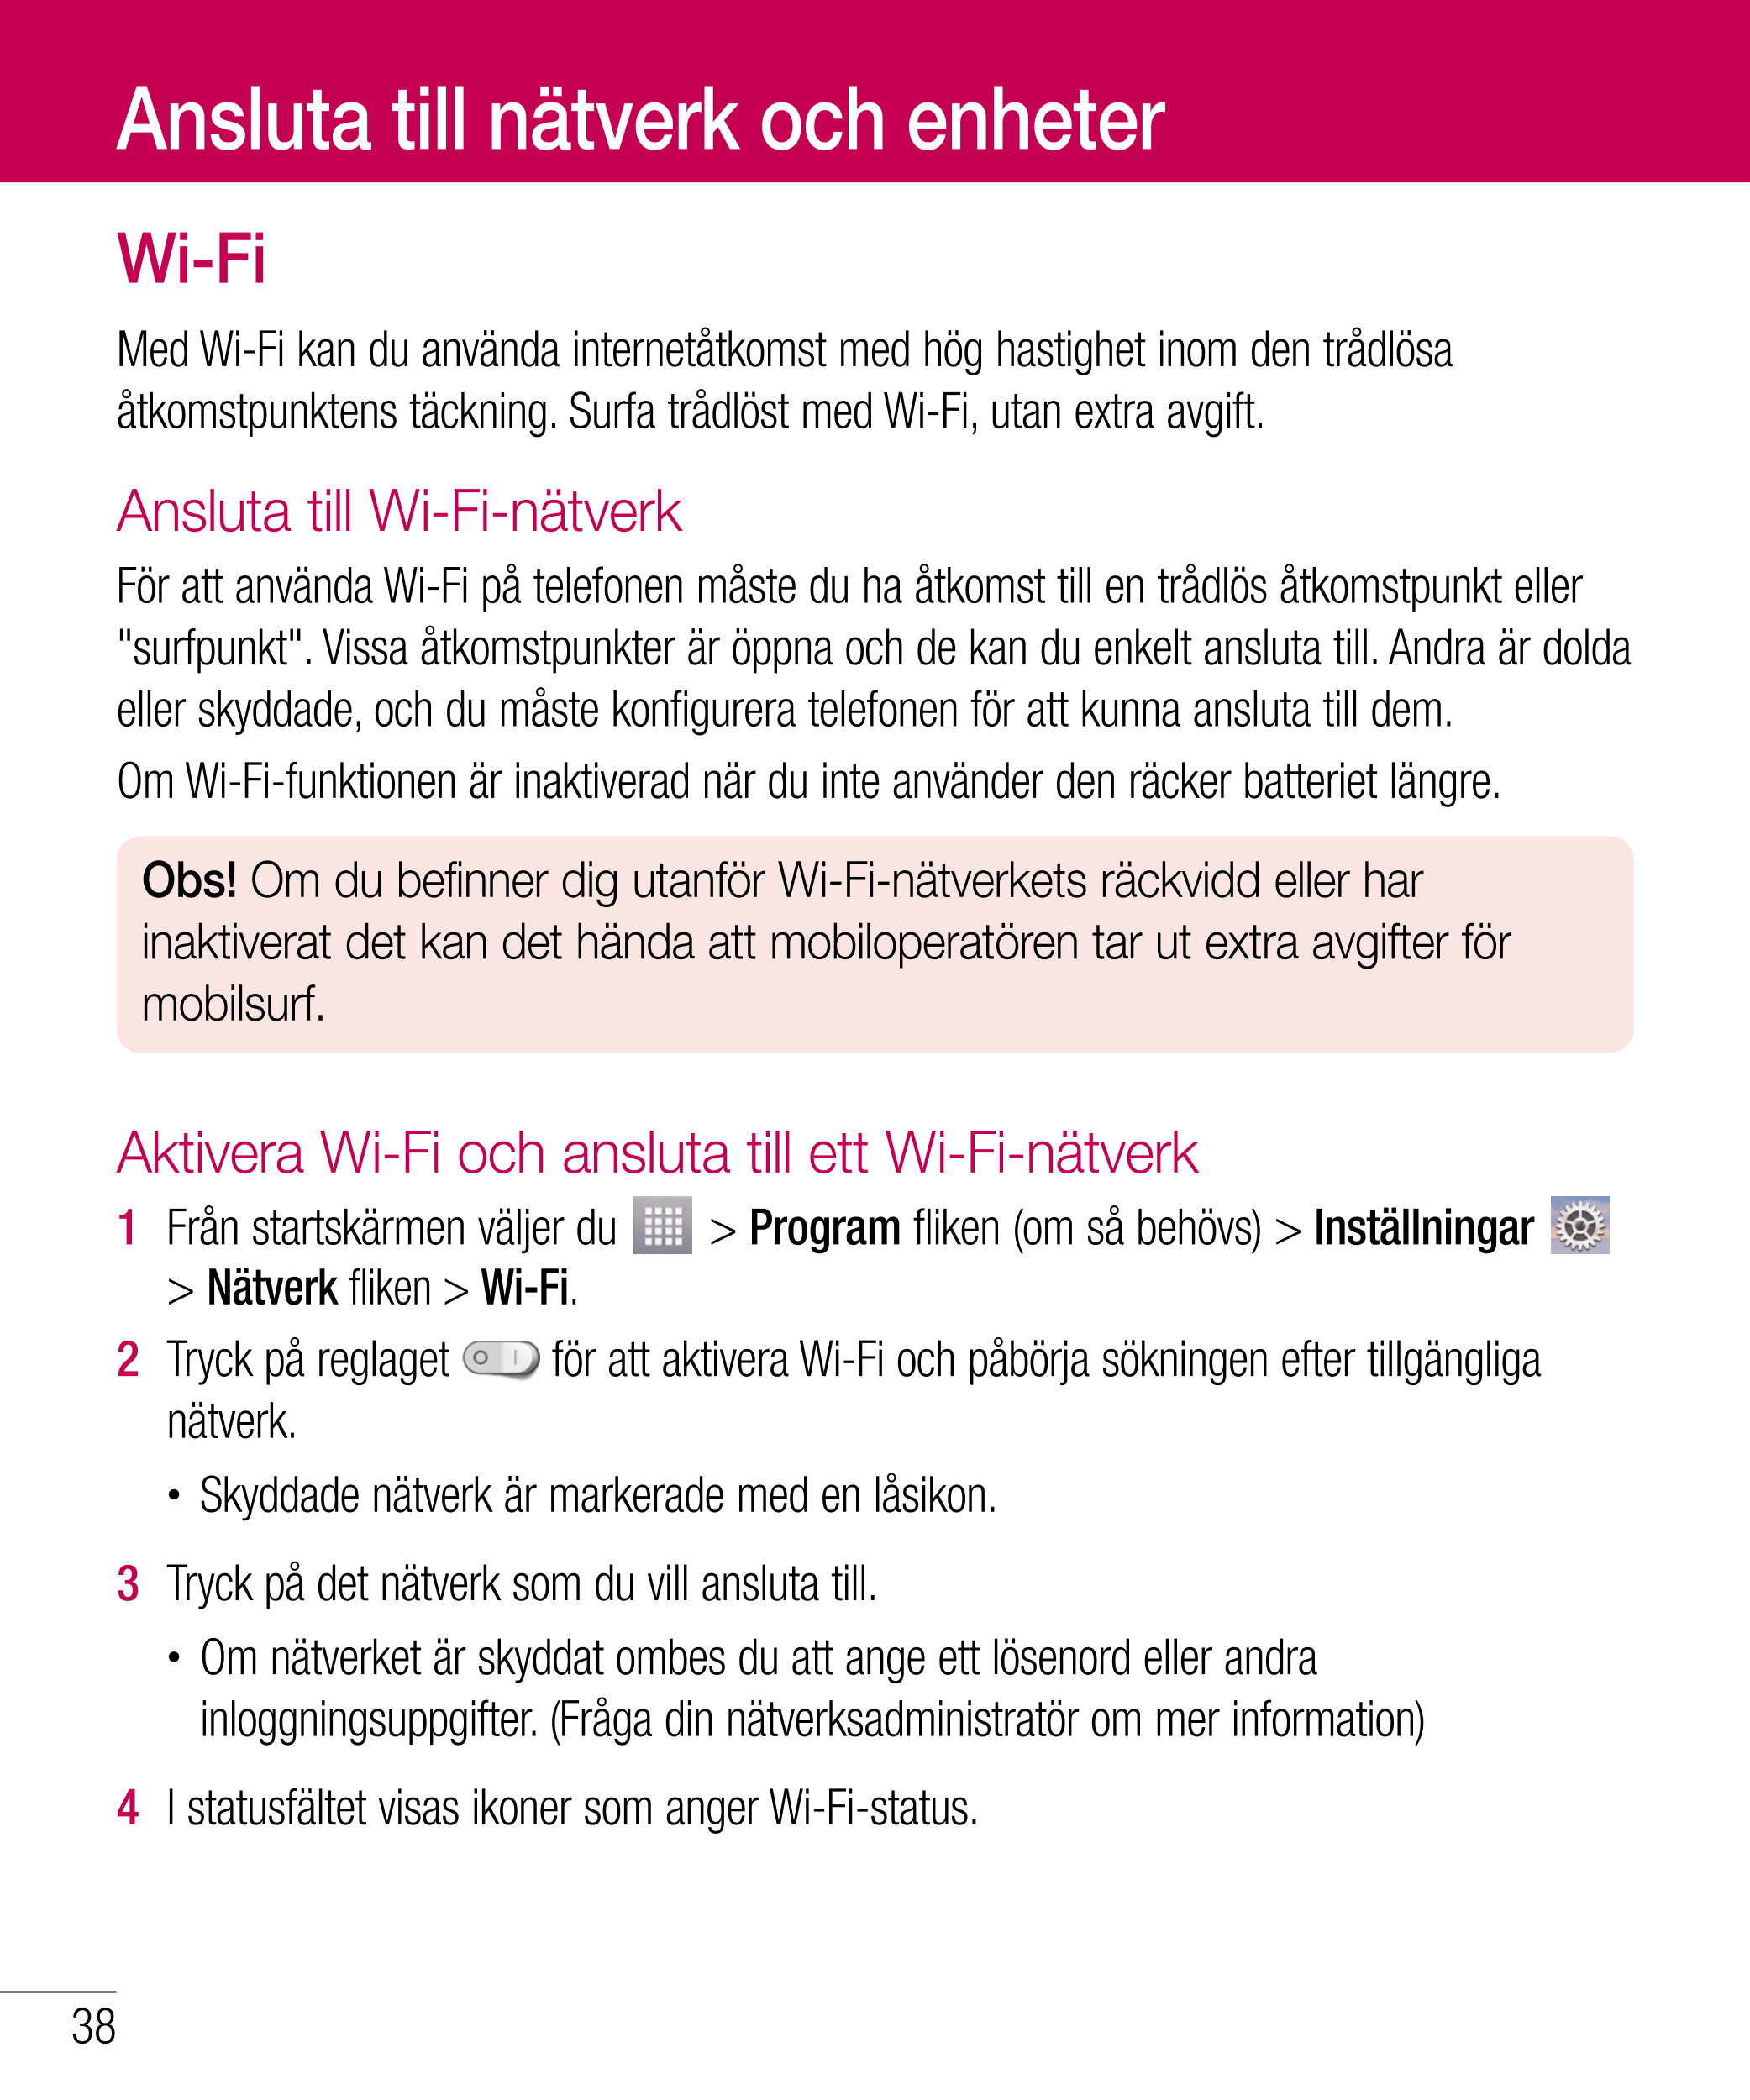 Ansluta till nätverk och enheter
Wi-Fi
Med Wi-Fi kan du använda internetåtkomst med hög hastighet inom den trådlösa 
åtkomstpunk